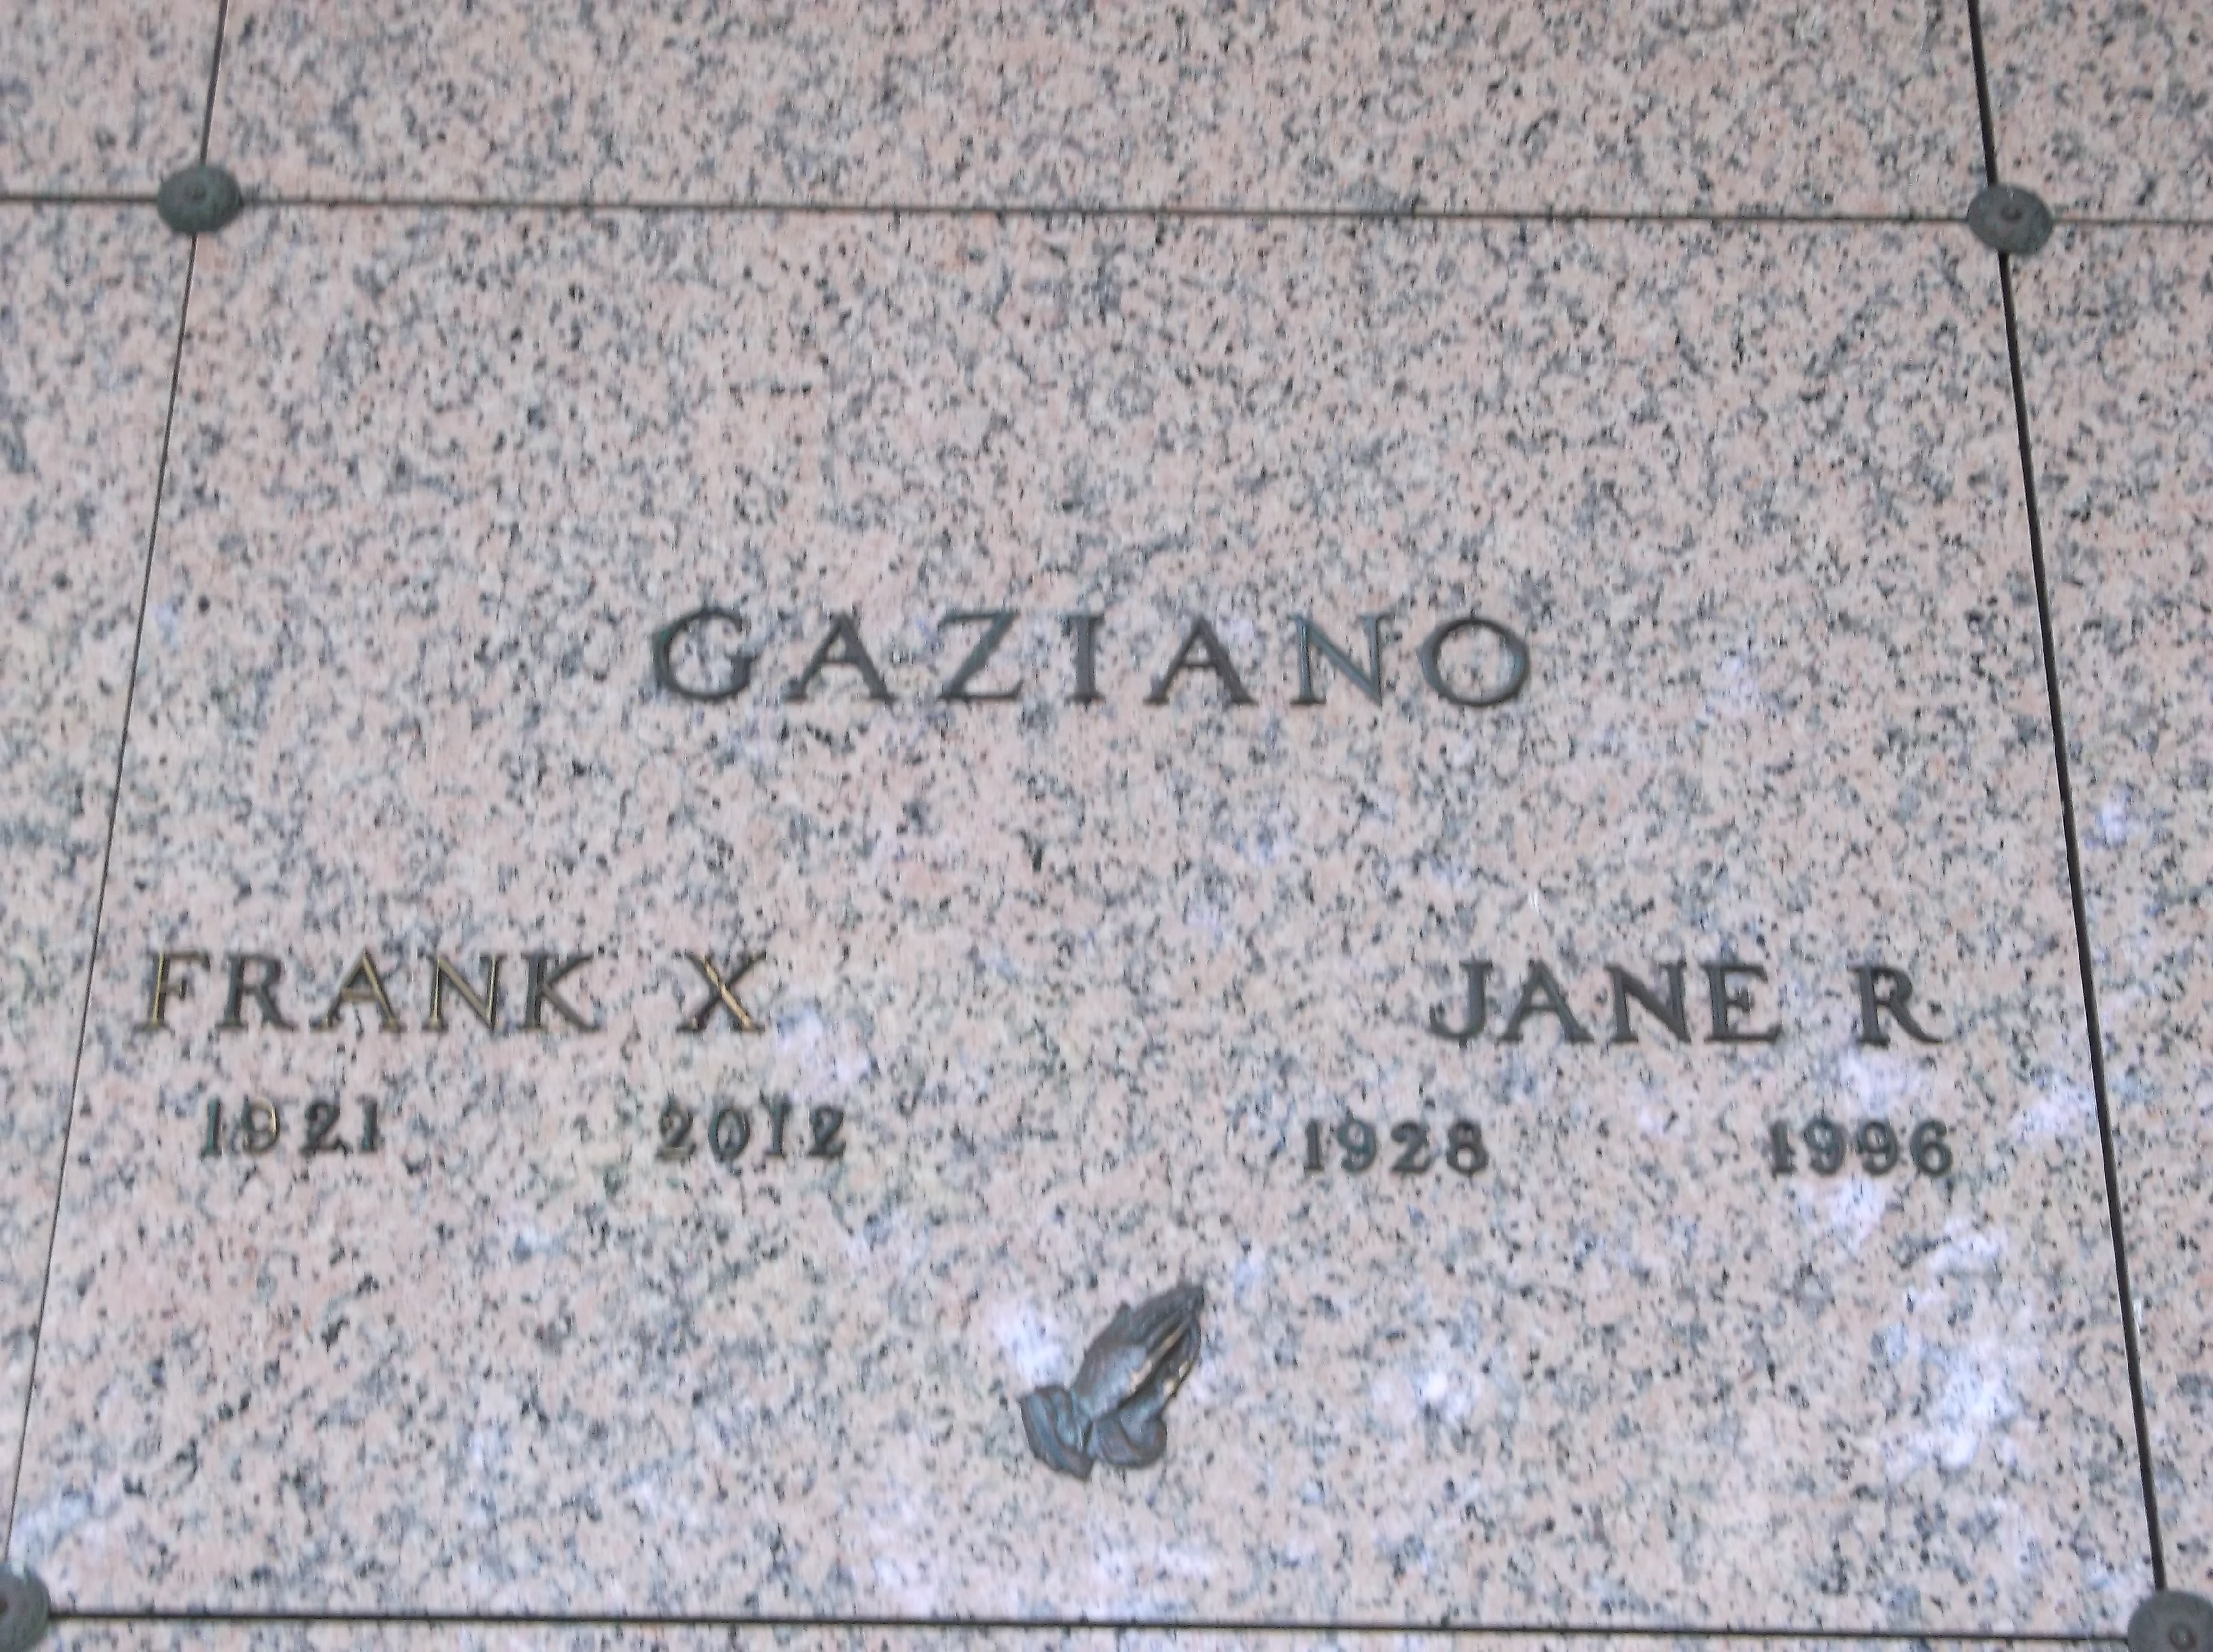 Frank X Gaziano